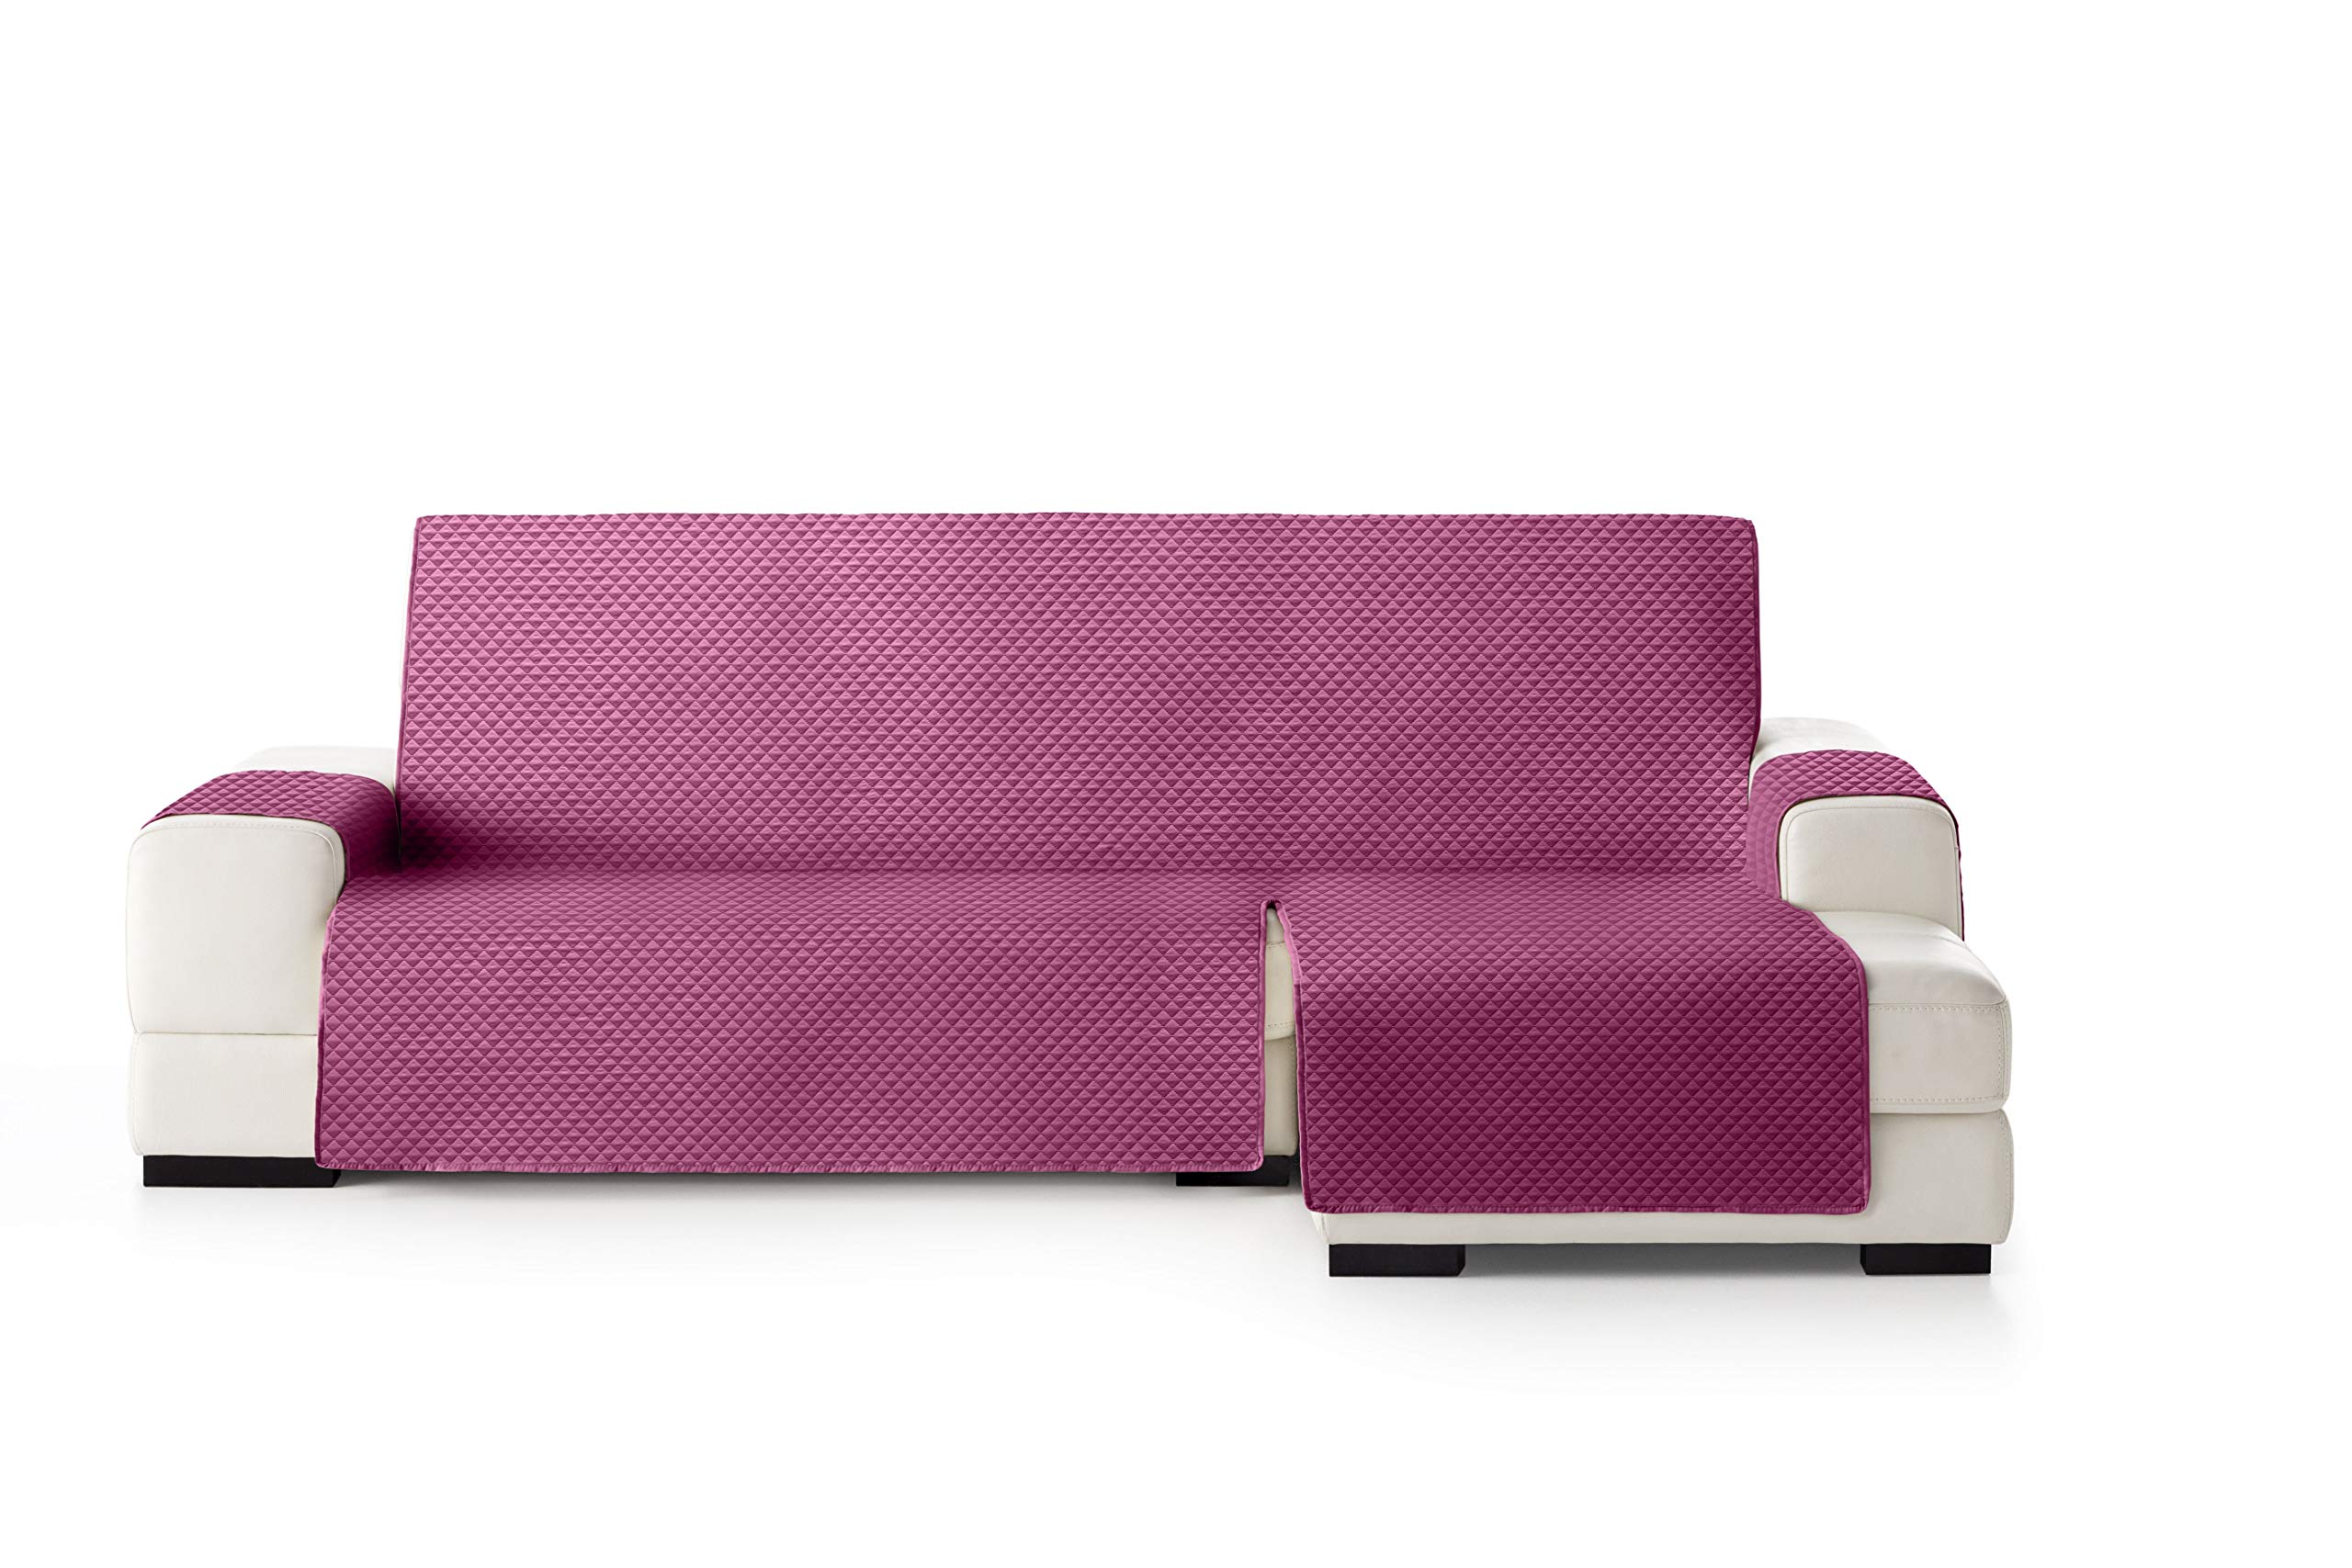 Eysa Oslo Protect wasserdichte und atmungsaktive Sofa überwurf, 100% Polyester, violett, 240 cm